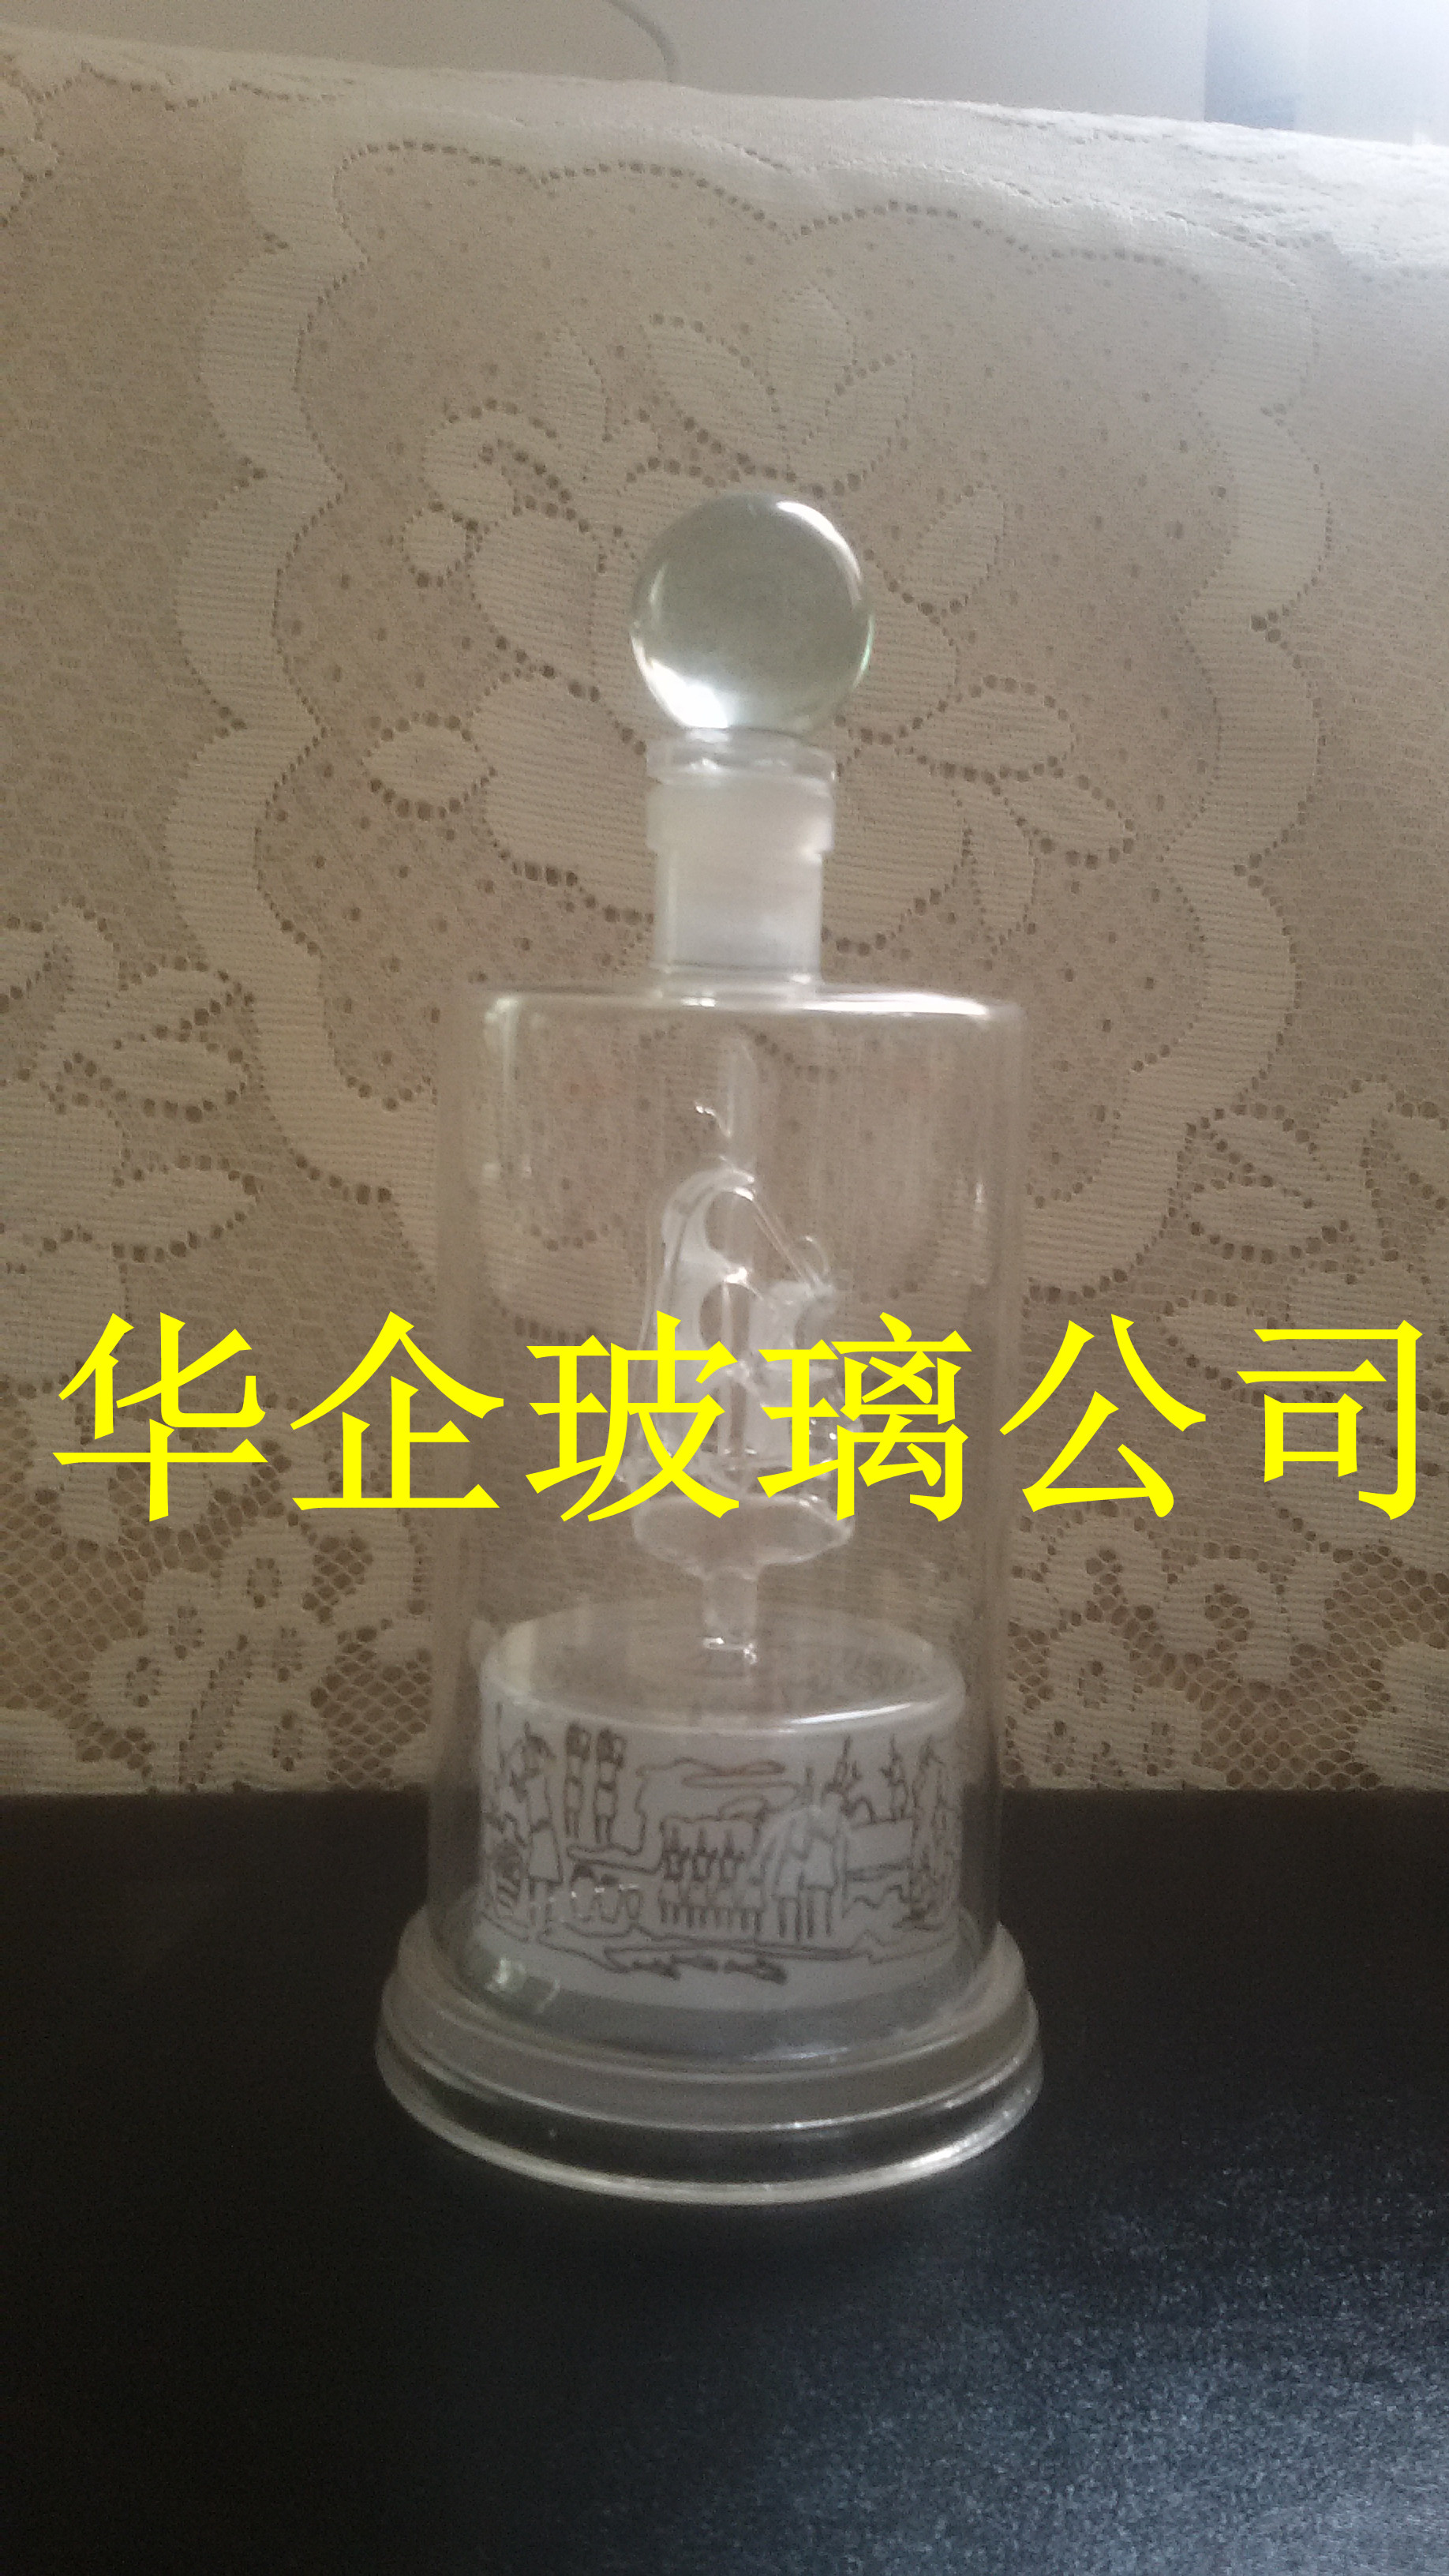 玻璃帆船酒瓶生肖马瓶工艺酒瓶供应用于环扣 盖子的玻璃帆船酒瓶生肖马瓶工艺酒瓶，玻璃工艺酒瓶，手工艺术玻璃